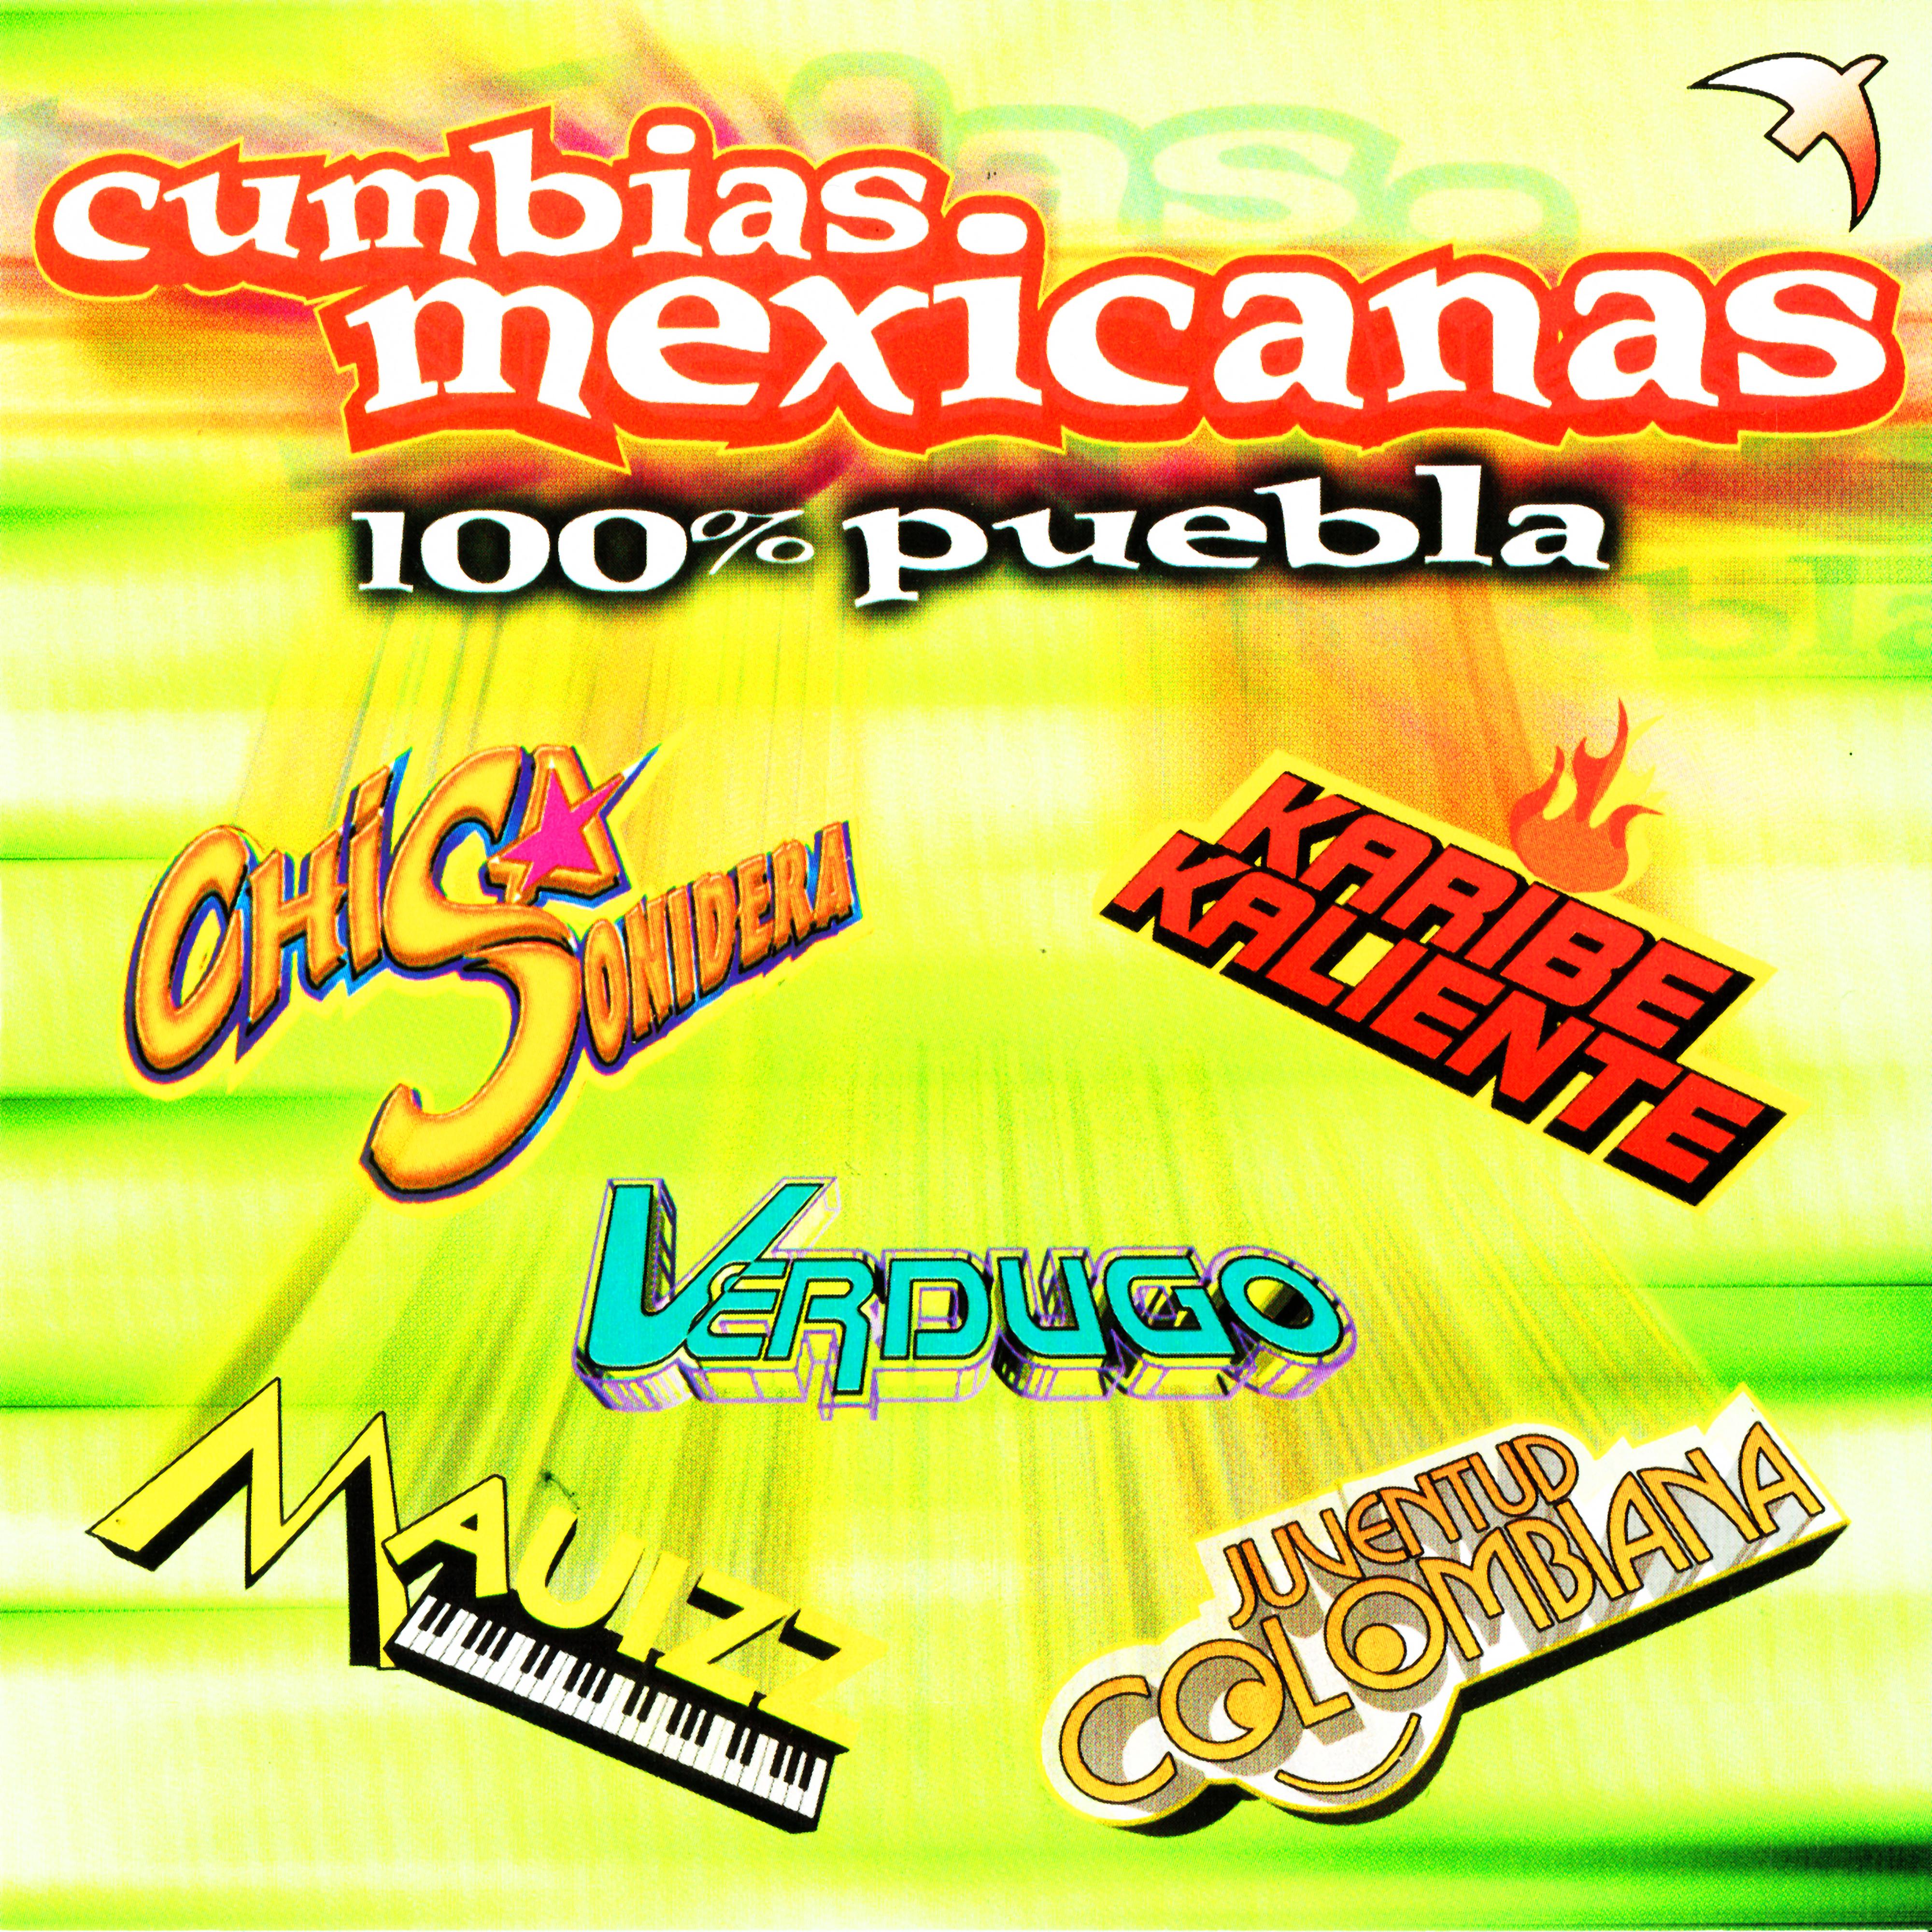 Cumbias Mexicanas "100% Puebla"